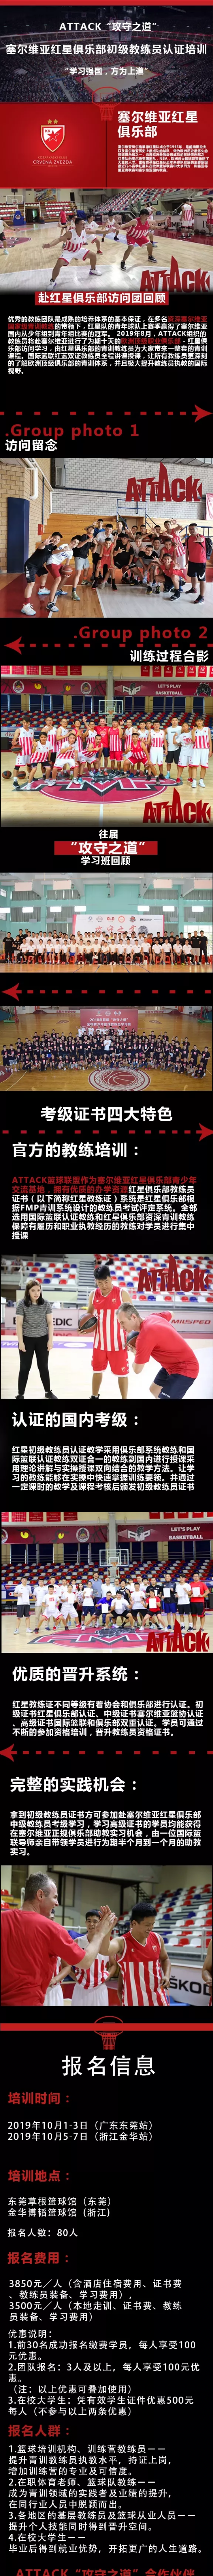 2019塞尔维亚红星篮球俱乐部初级教练员认证培训10月东莞站